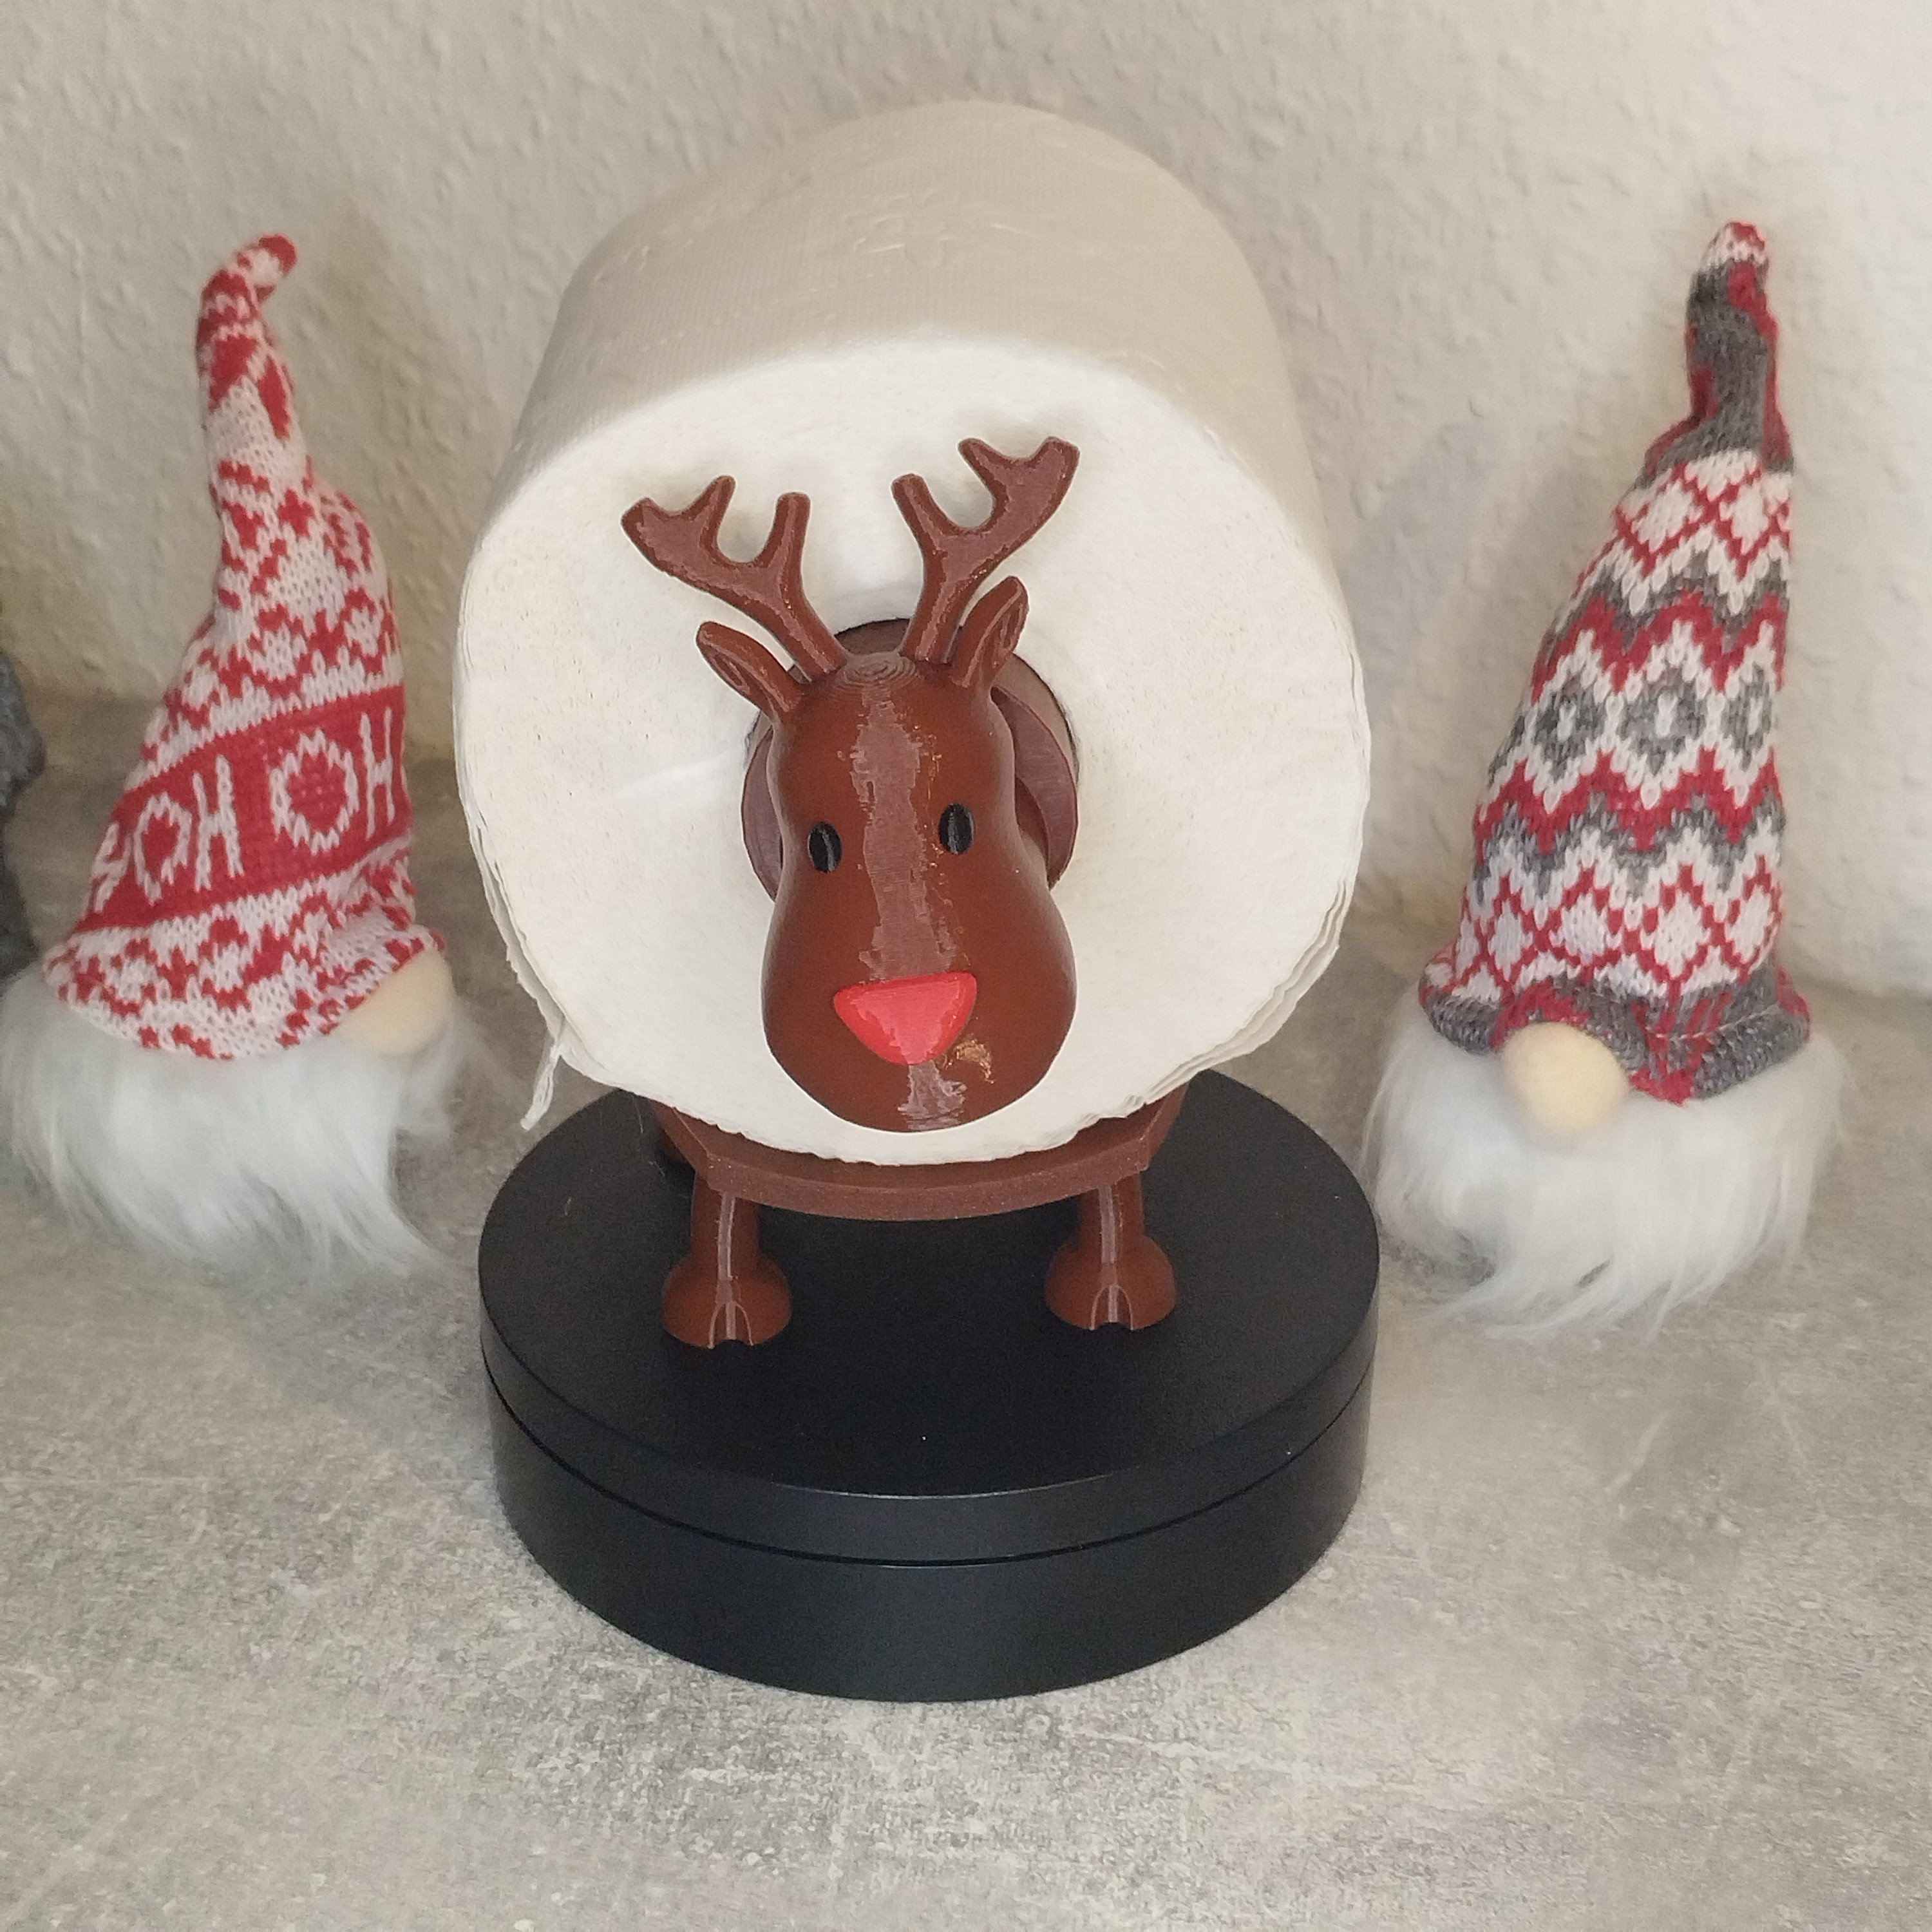 Poster Rudolph mit der roten Nase Rentier mit Hut und Weihnachtskugeln 